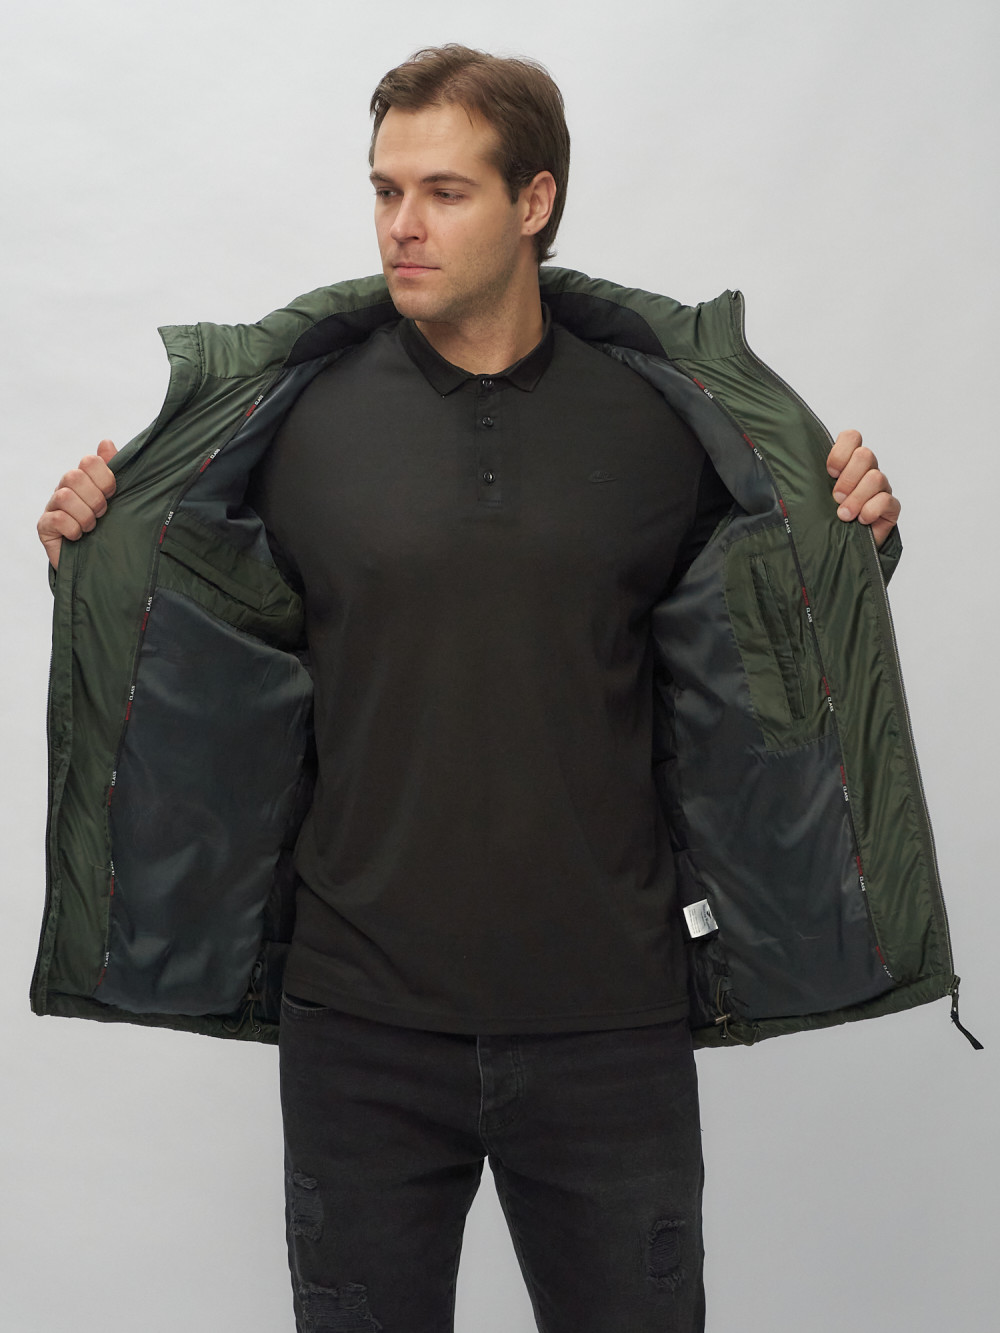 Купить куртку мужскую спортивную весеннюю оптом от производителя недорого в Москве 62179Kh 1